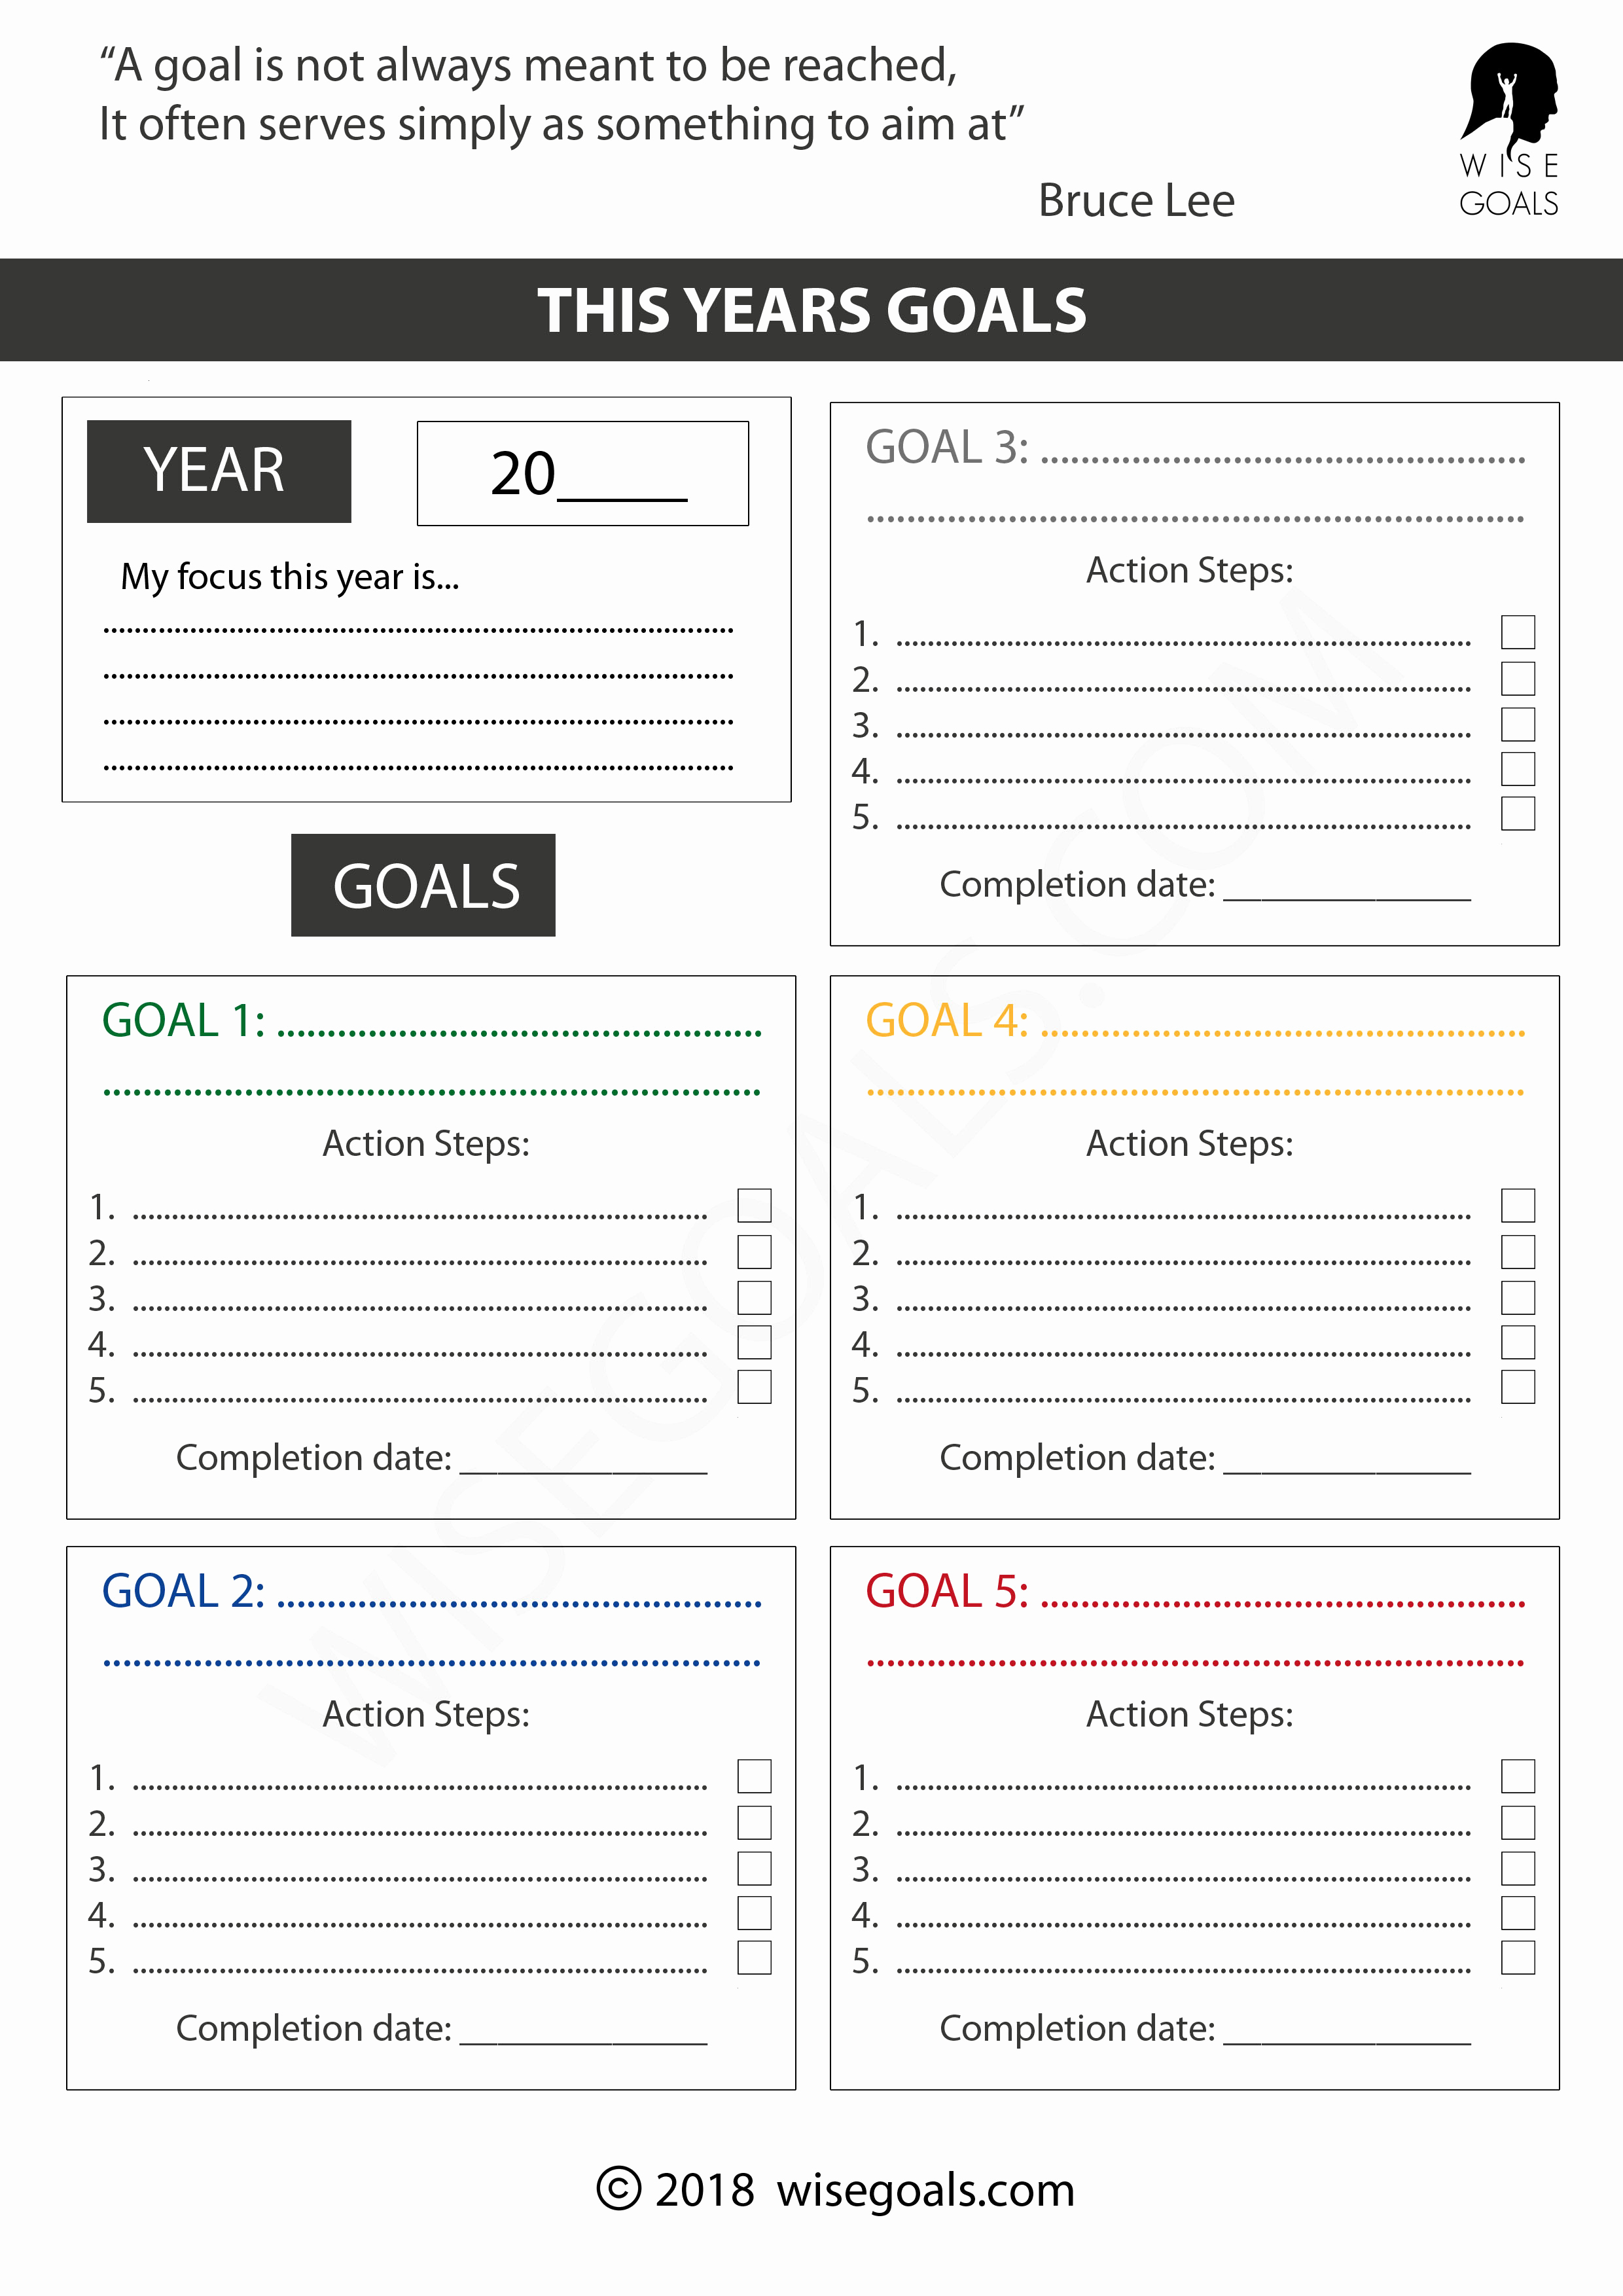 Goal Setting Worksheet Pdf Best Of 4 Stylish Goal Setting Worksheets to Print Pdf